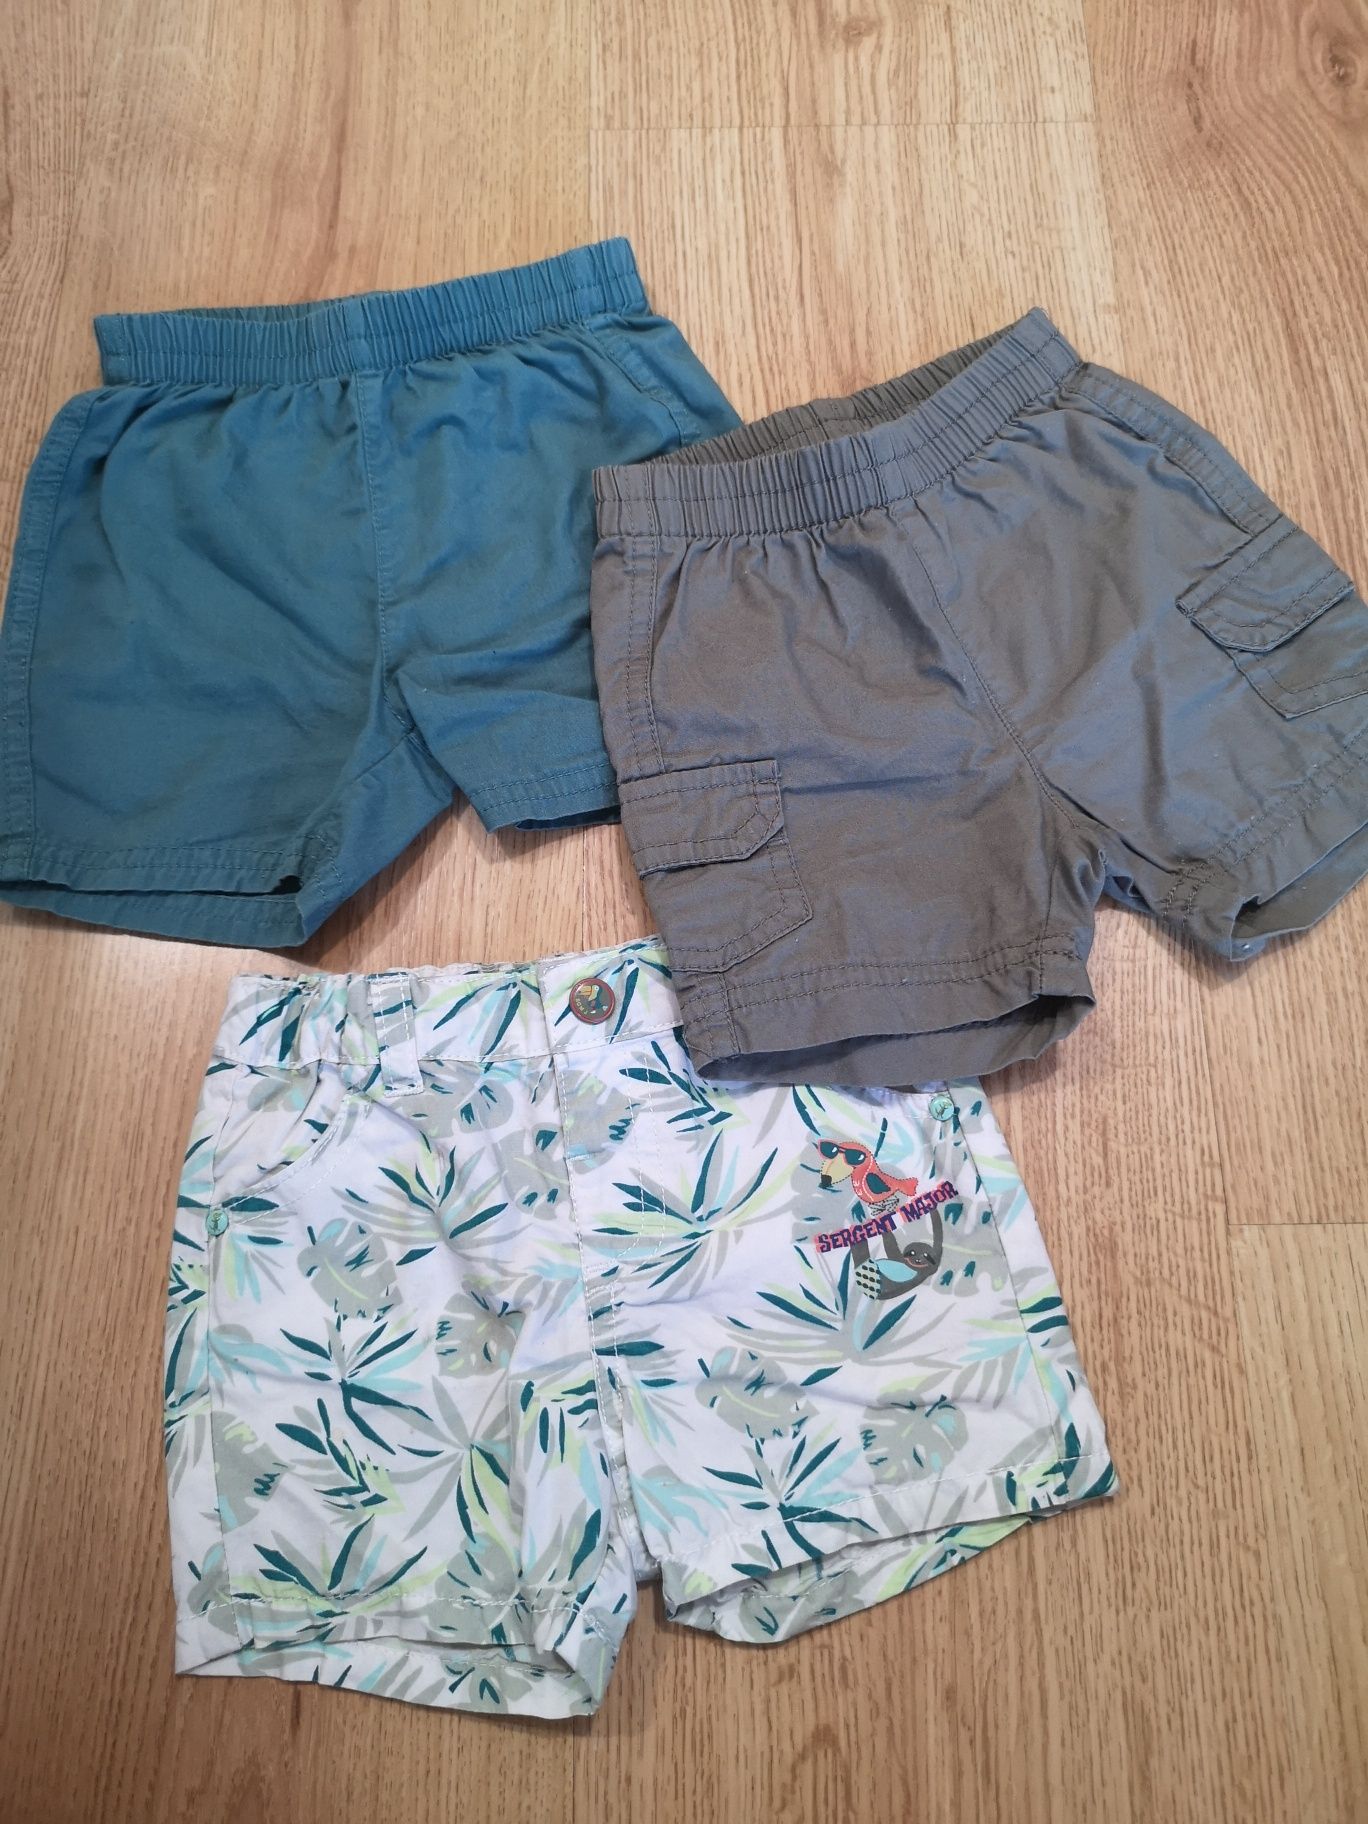 3 shorts 62 e 68cm Odivelas • OLX Portugal